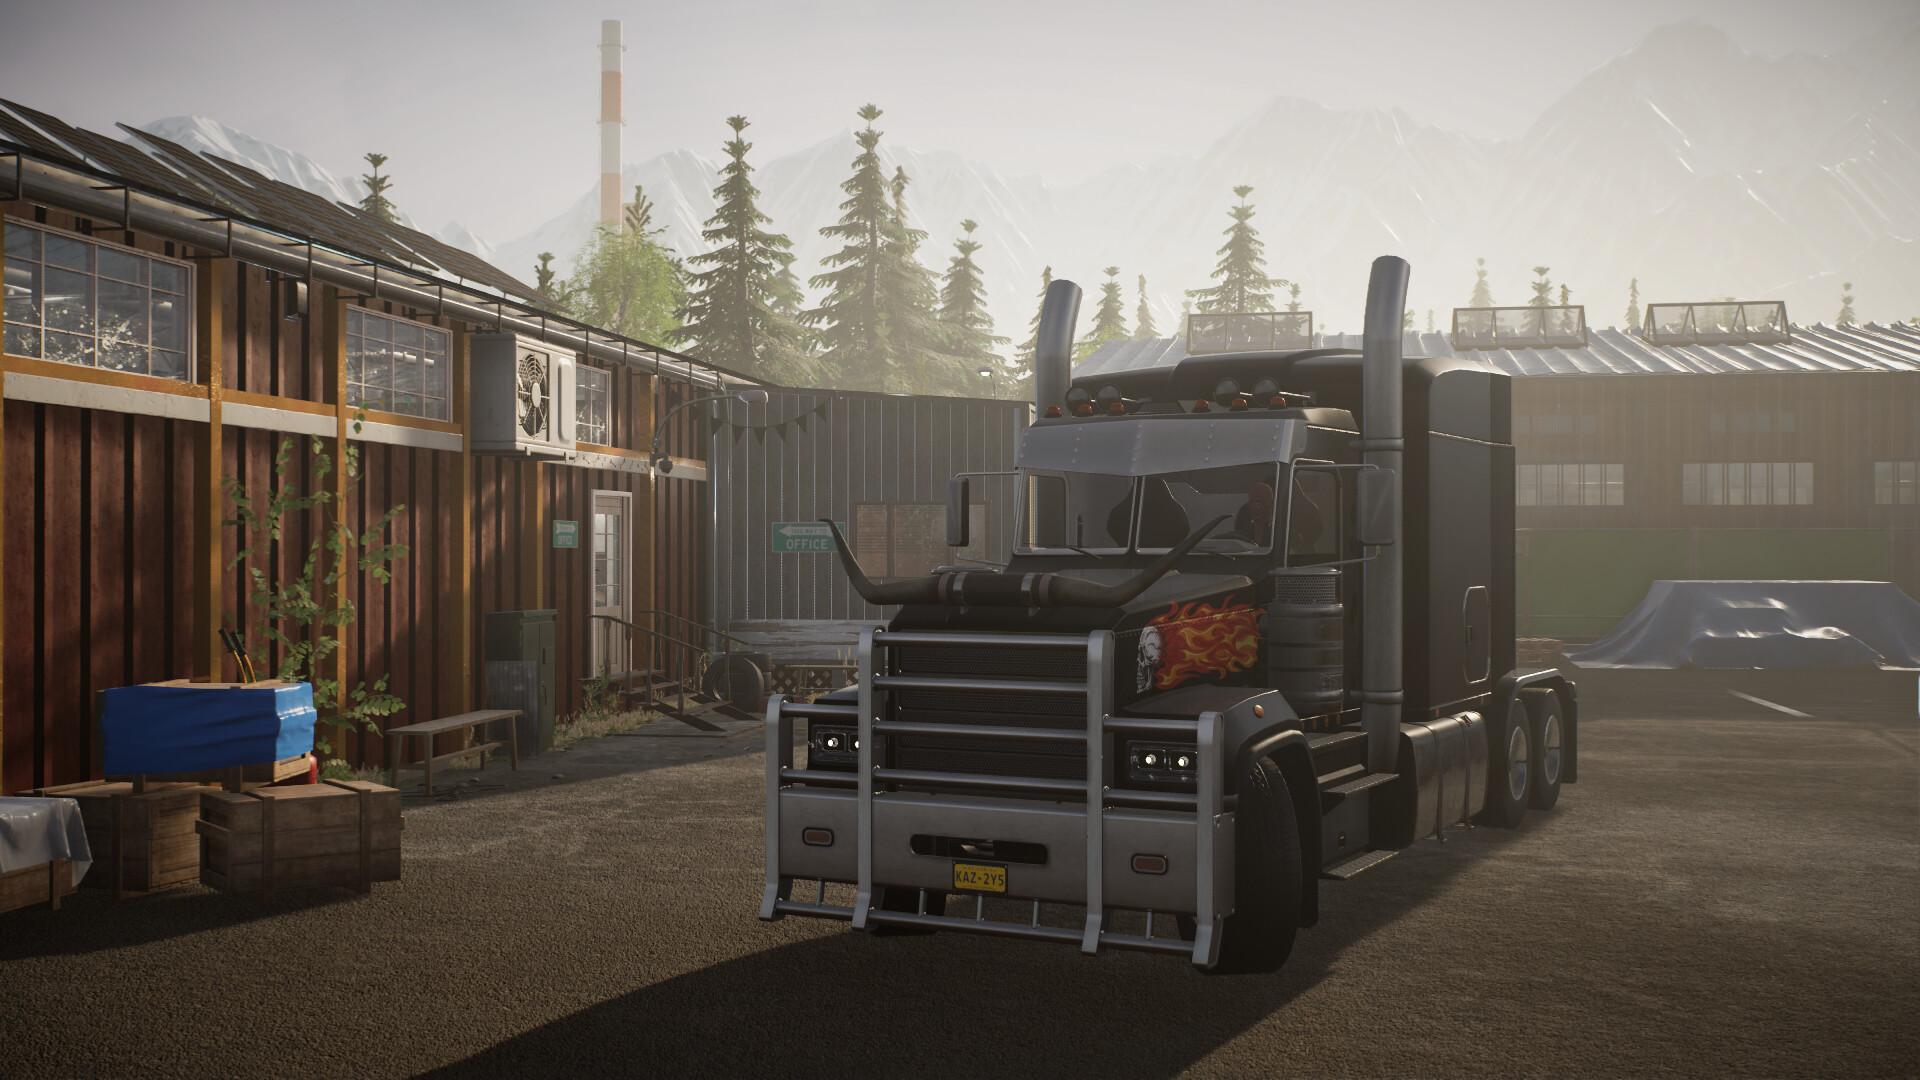 Alaskan Road Truckers: Mother Truckers Edition